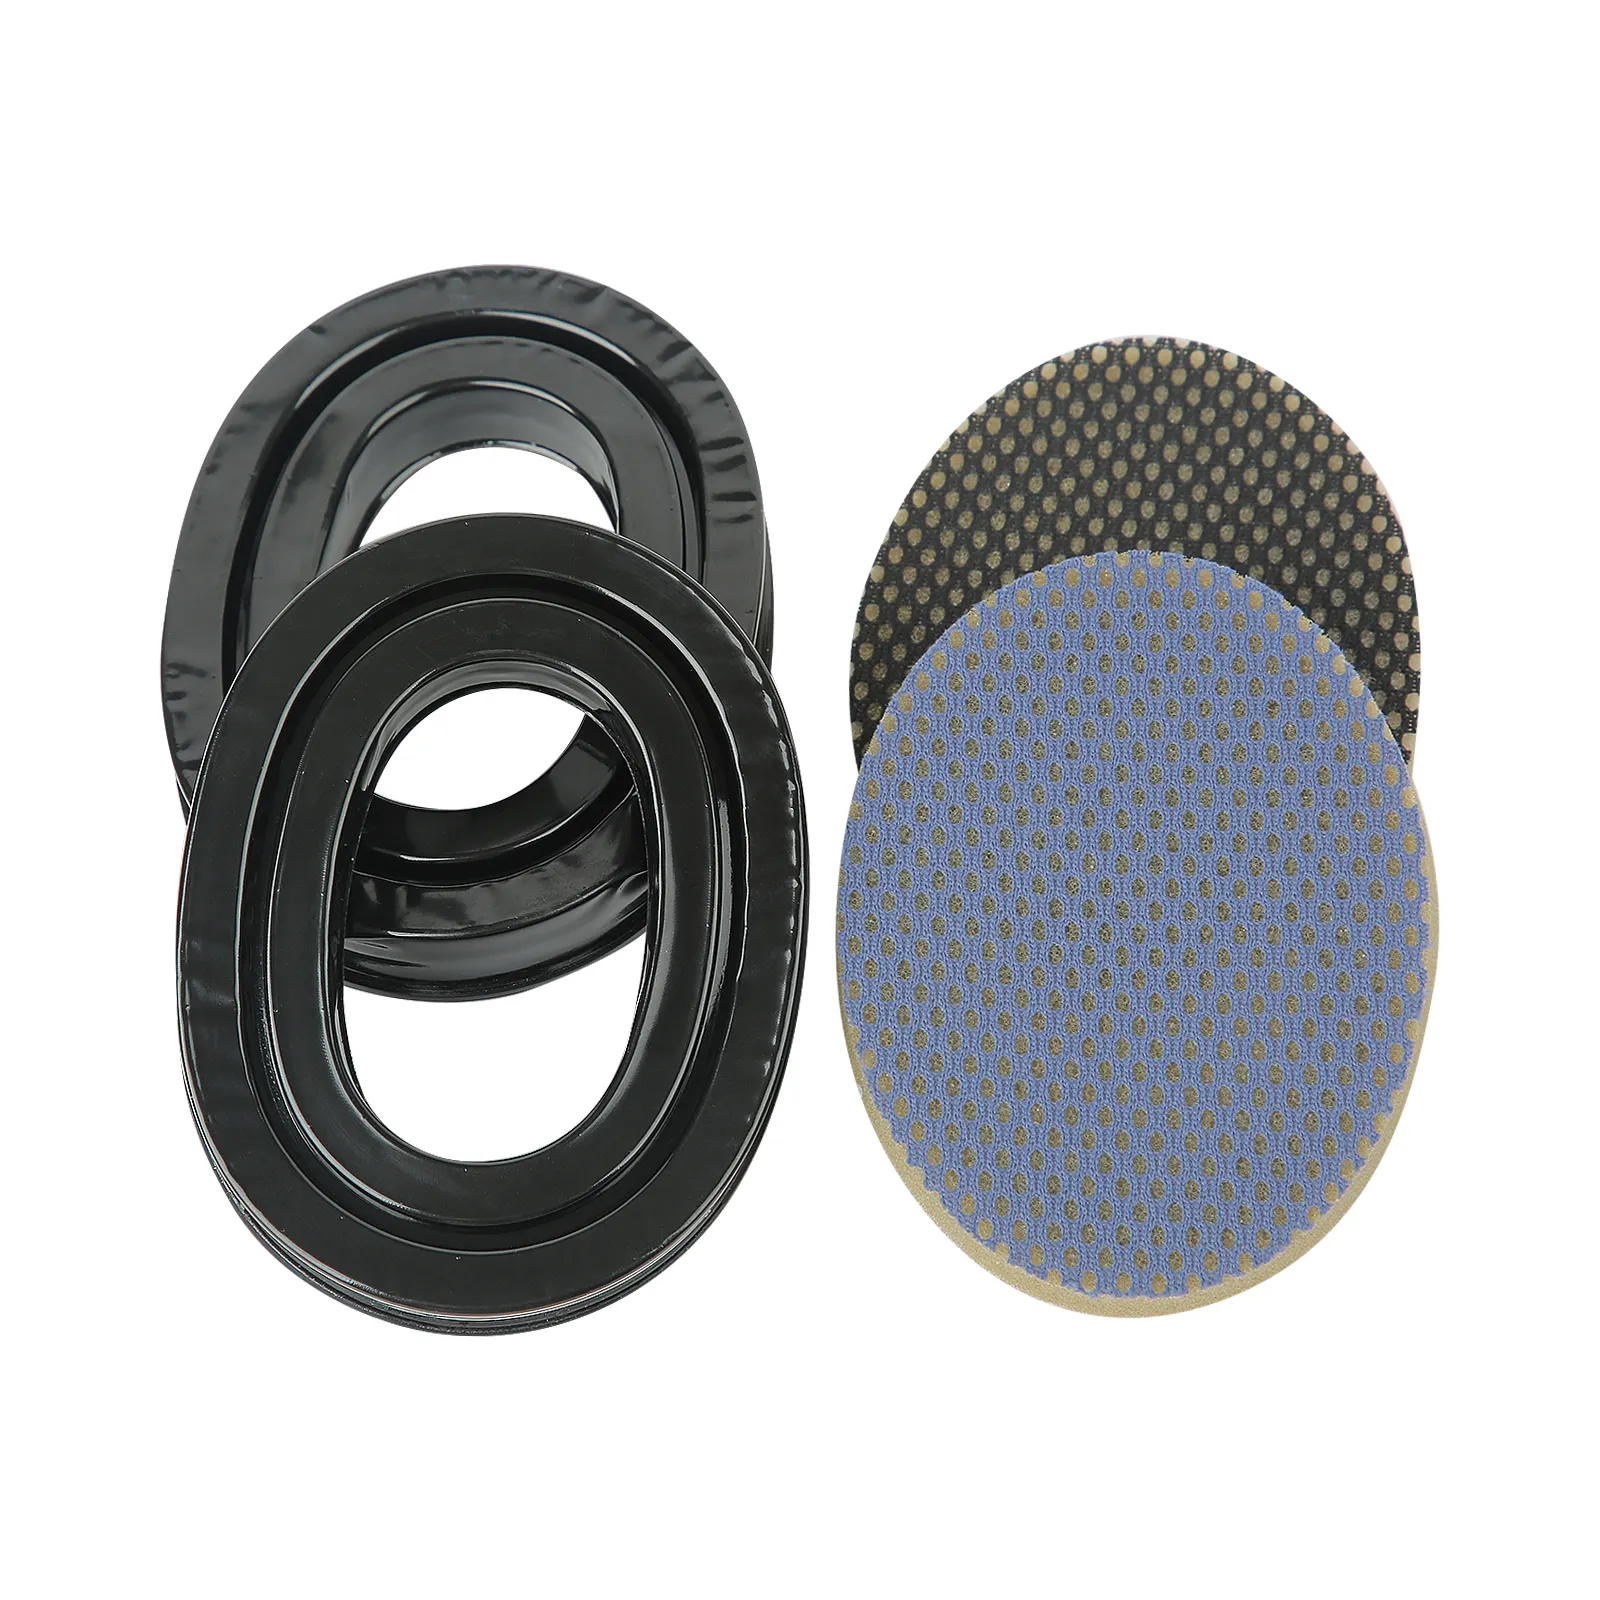 Le joint d'oreille en Gel convient aux casques de protection auditive électroniques Sordin MSA sécurité Sordin suprême pro-x casque de Protection auditive